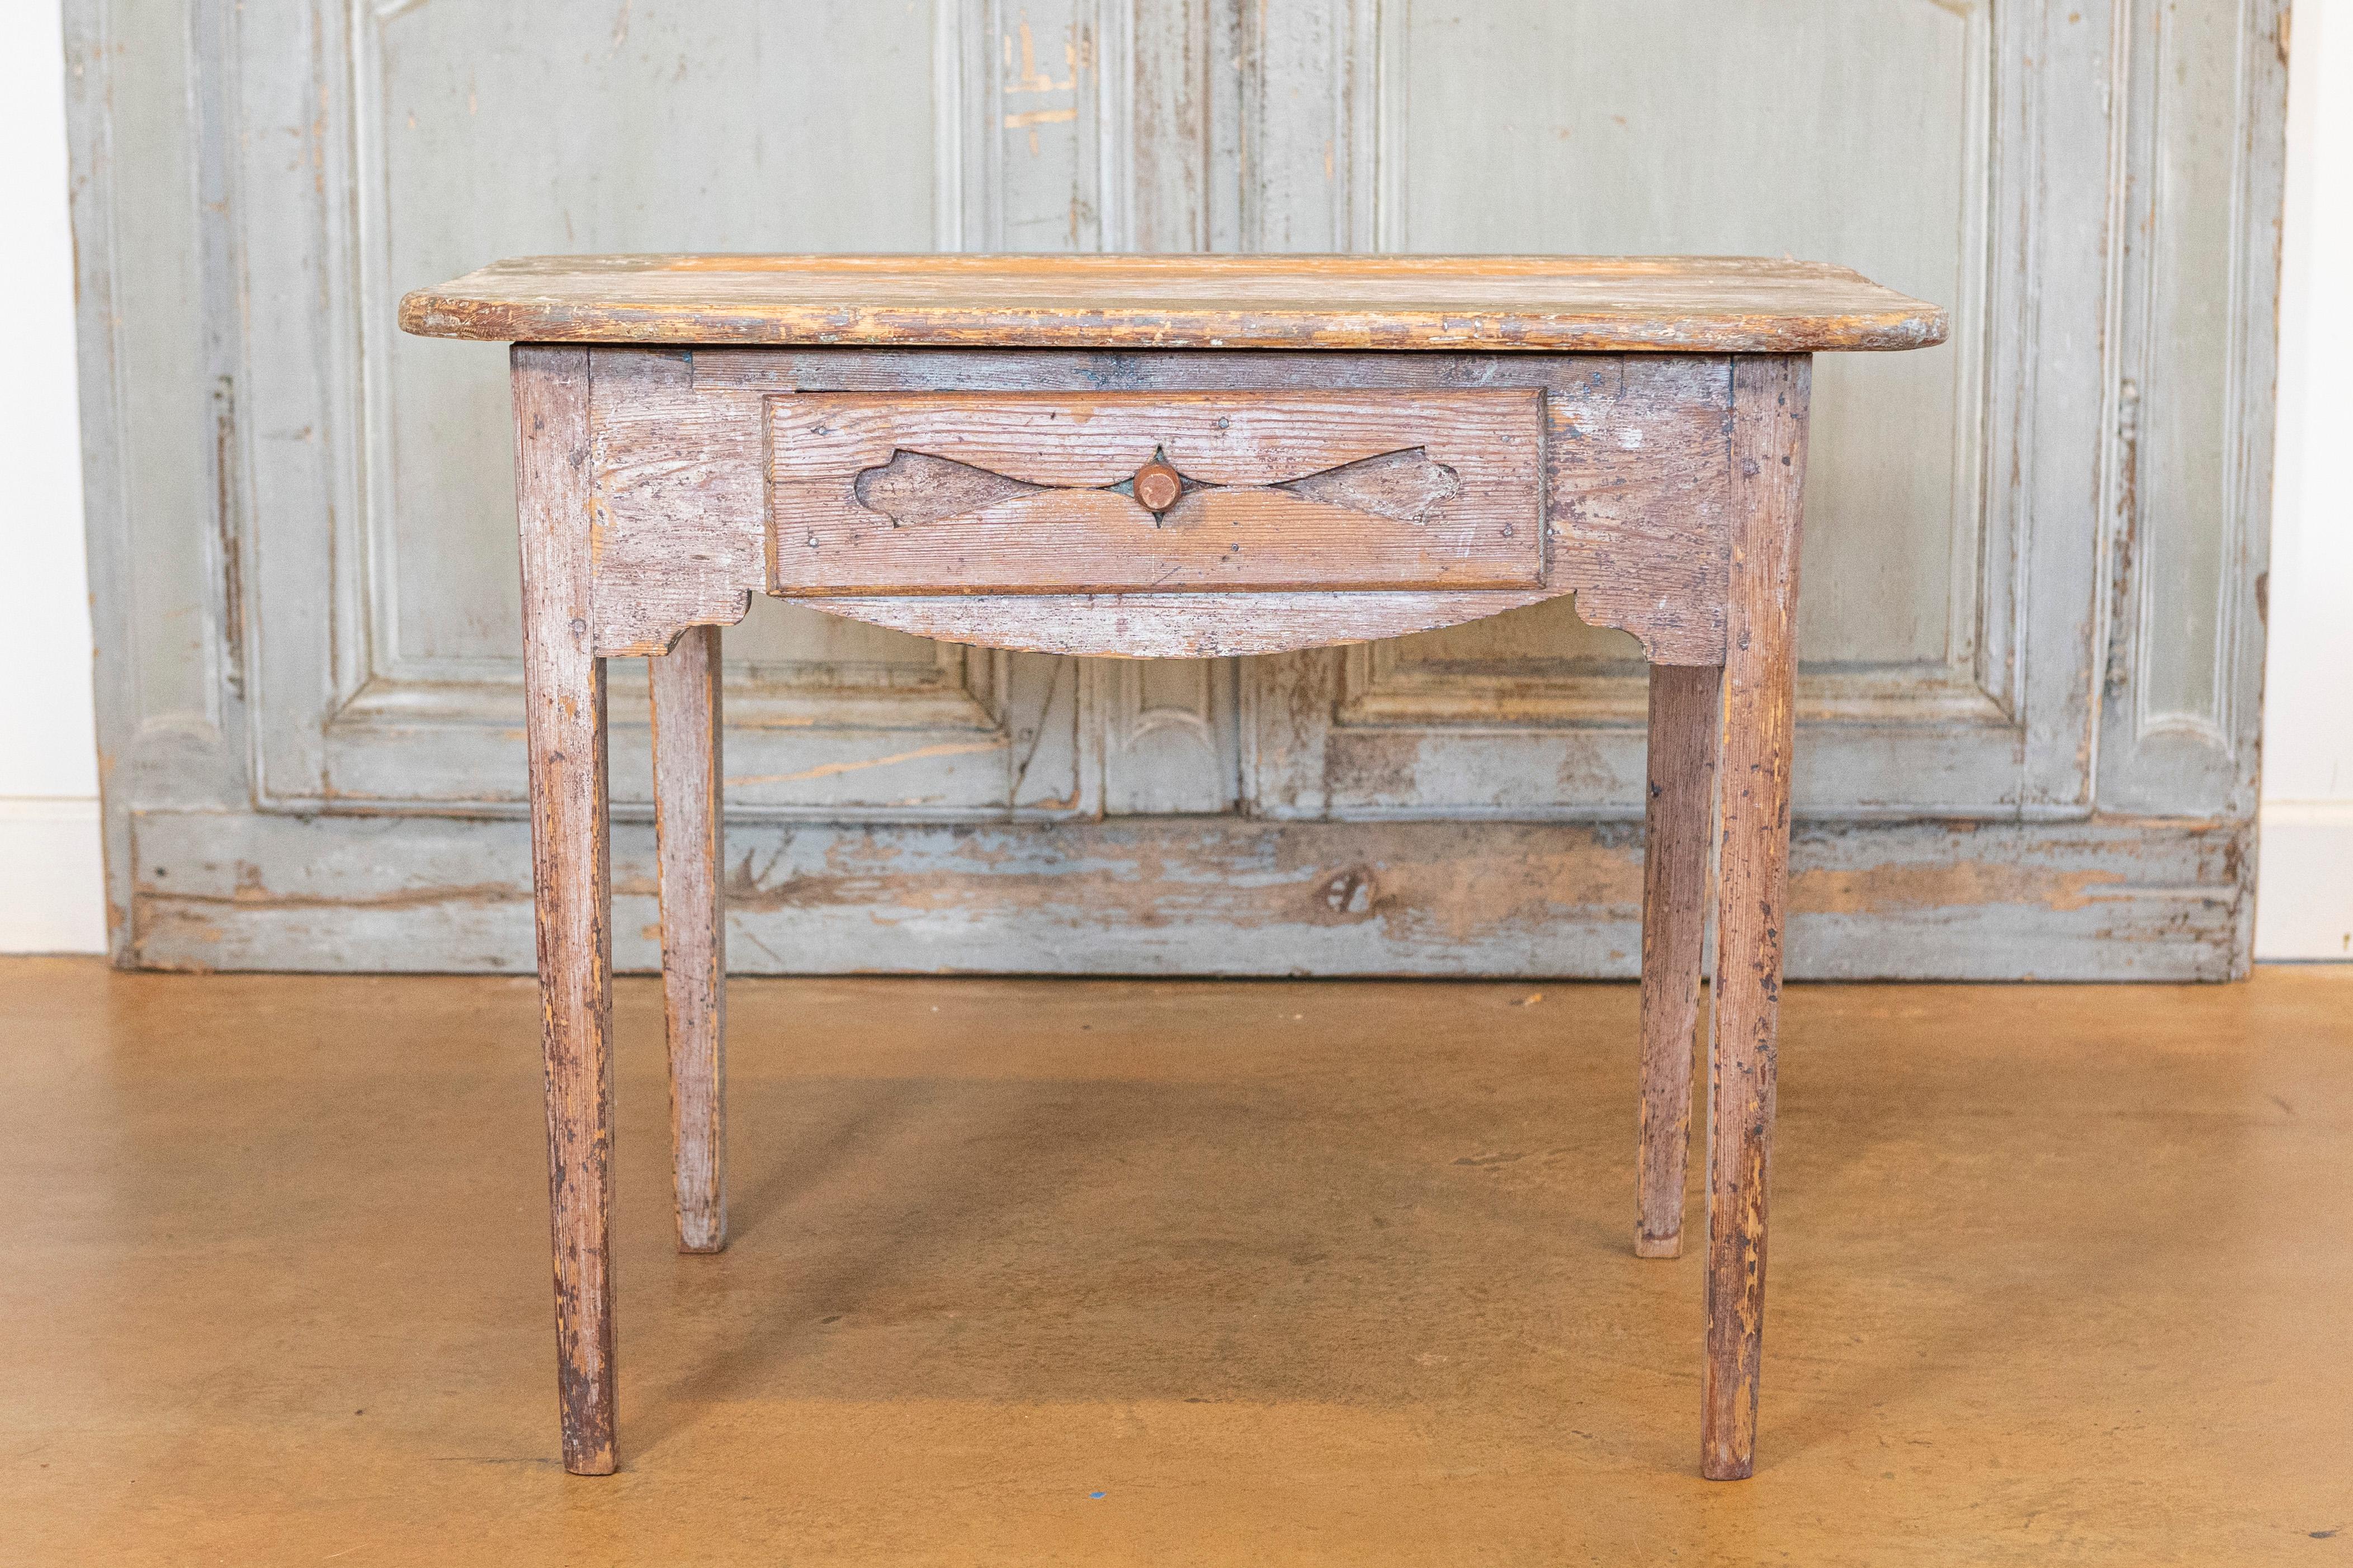 Table d'appoint suédoise datant d'environ 1820, avec un aspect à moitié dépouillé, un seul tiroir, des pieds effilés et un aspect altéré. Cette table d'appoint suédoise datant d'environ 1820 respire le charme rustique et l'authenticité. Il a été